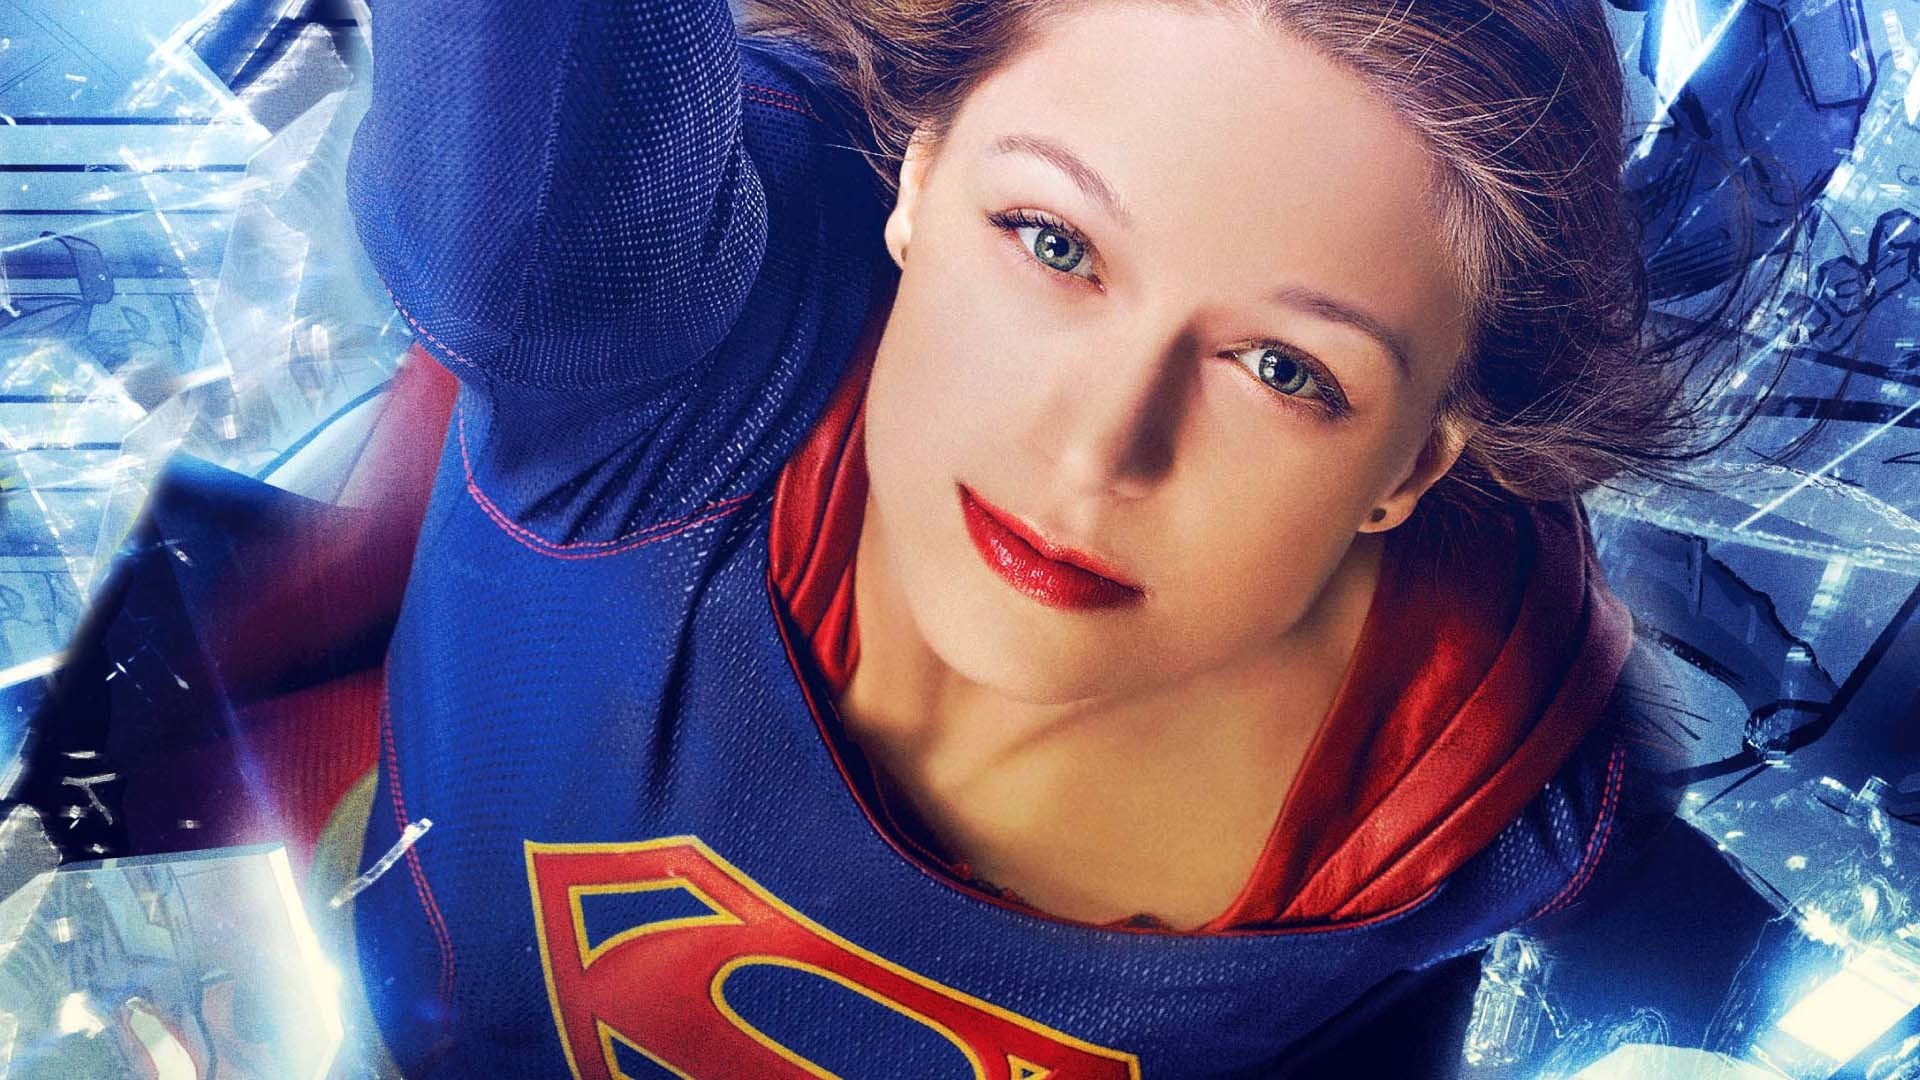 Wallpaper Melissa Benoist as supergirl, tv show, face